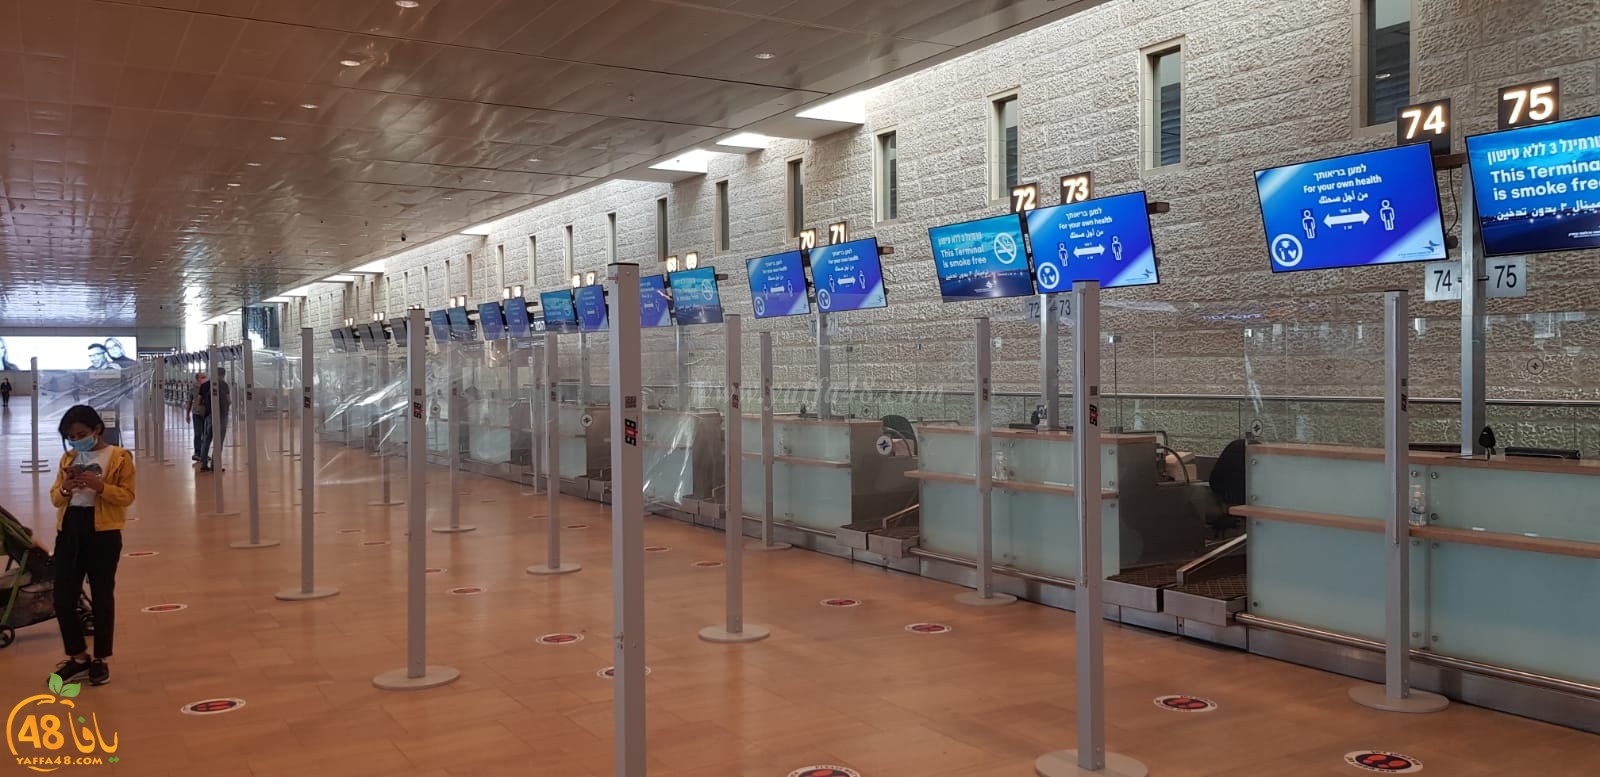  فيديو: فواصل للتباعد في مطار اللد بعد ازدياد عدد المسافرين العرب 